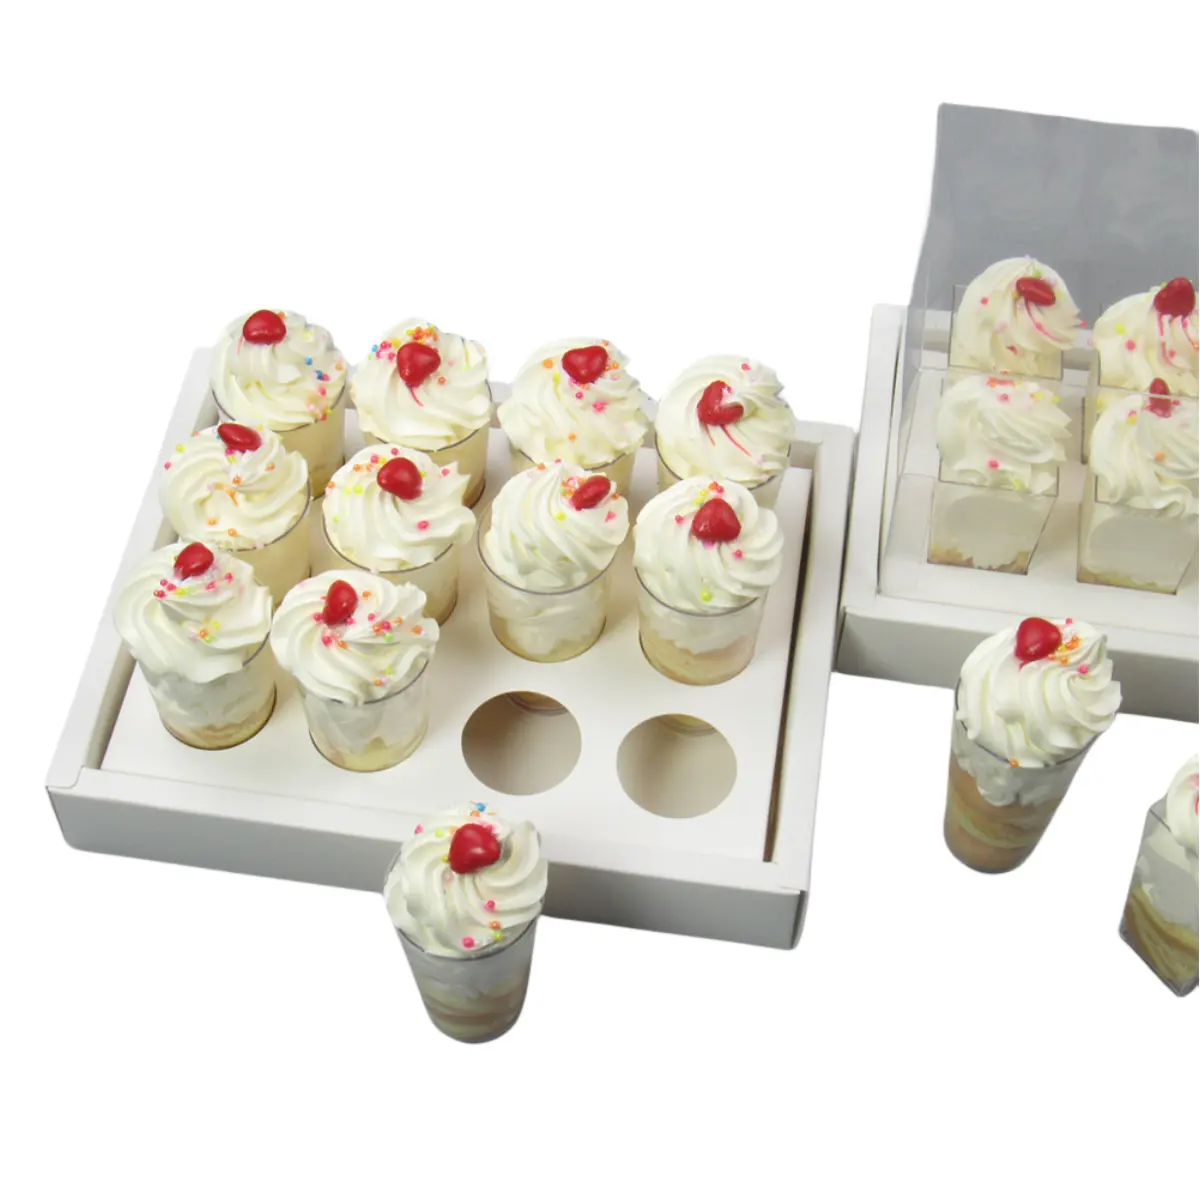 Yeni tasarım 6/12/24 sayım boşluğu Cupcake kutuları taşıyıcı kağıt çörek Cupcake kapları tutucular pencere temizle şeffaf kapak ile